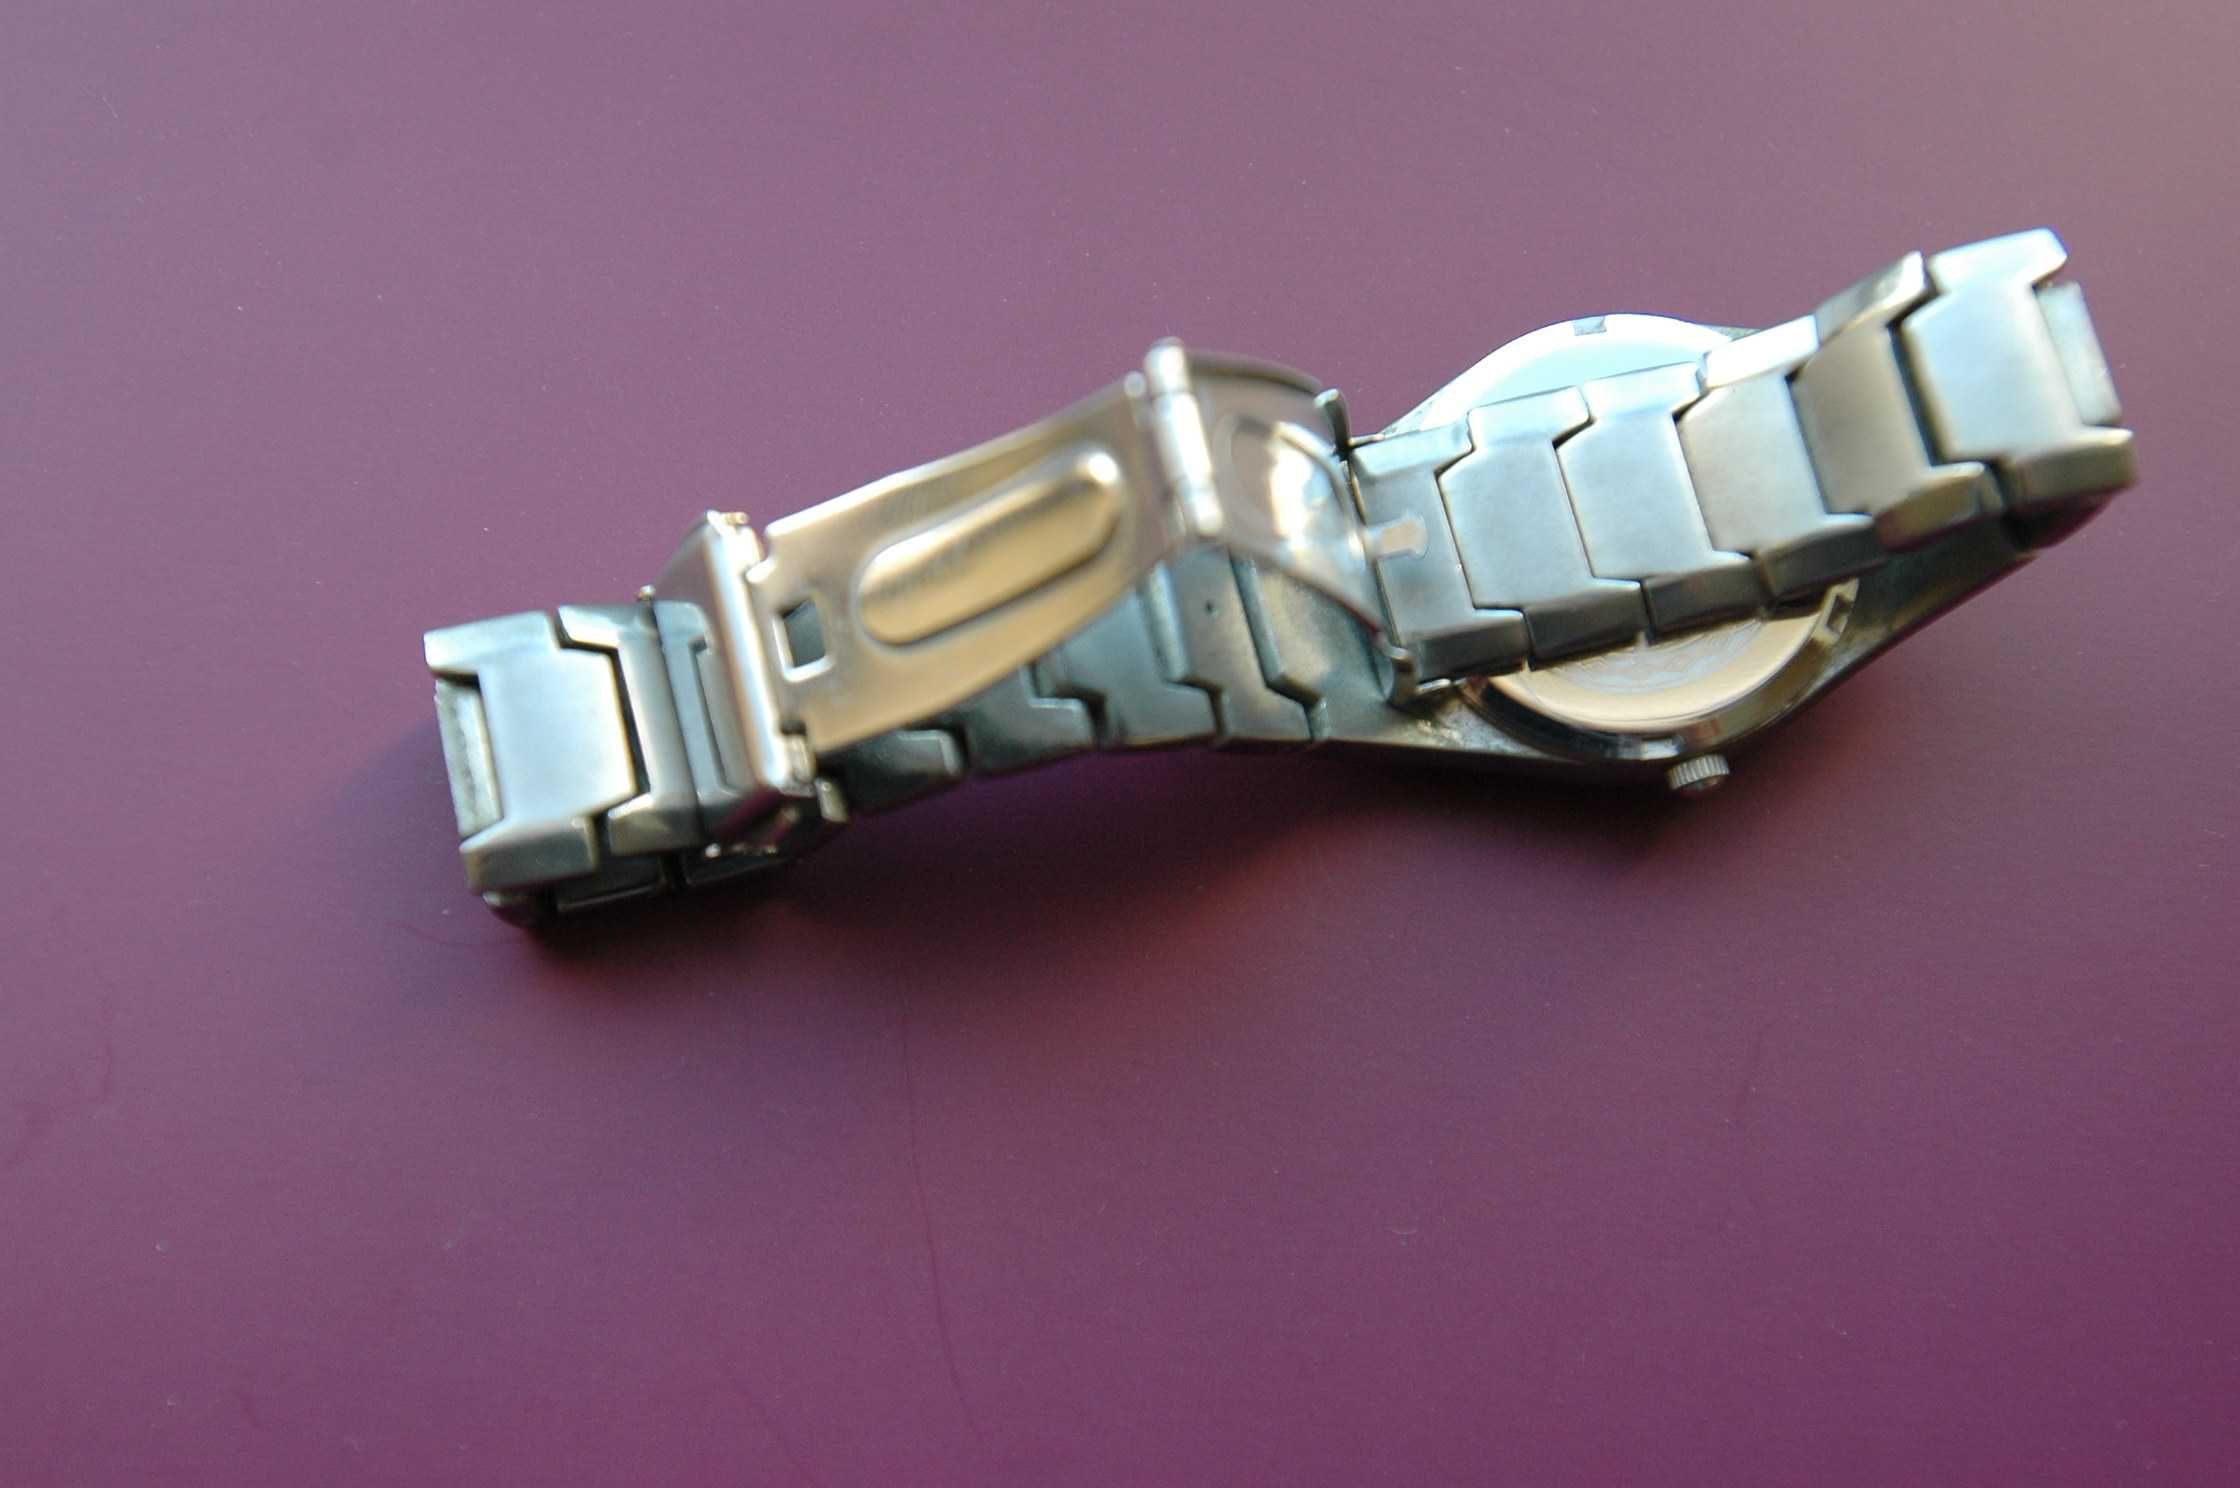 zegarek z napisem Ferrari Carden z branzoletą